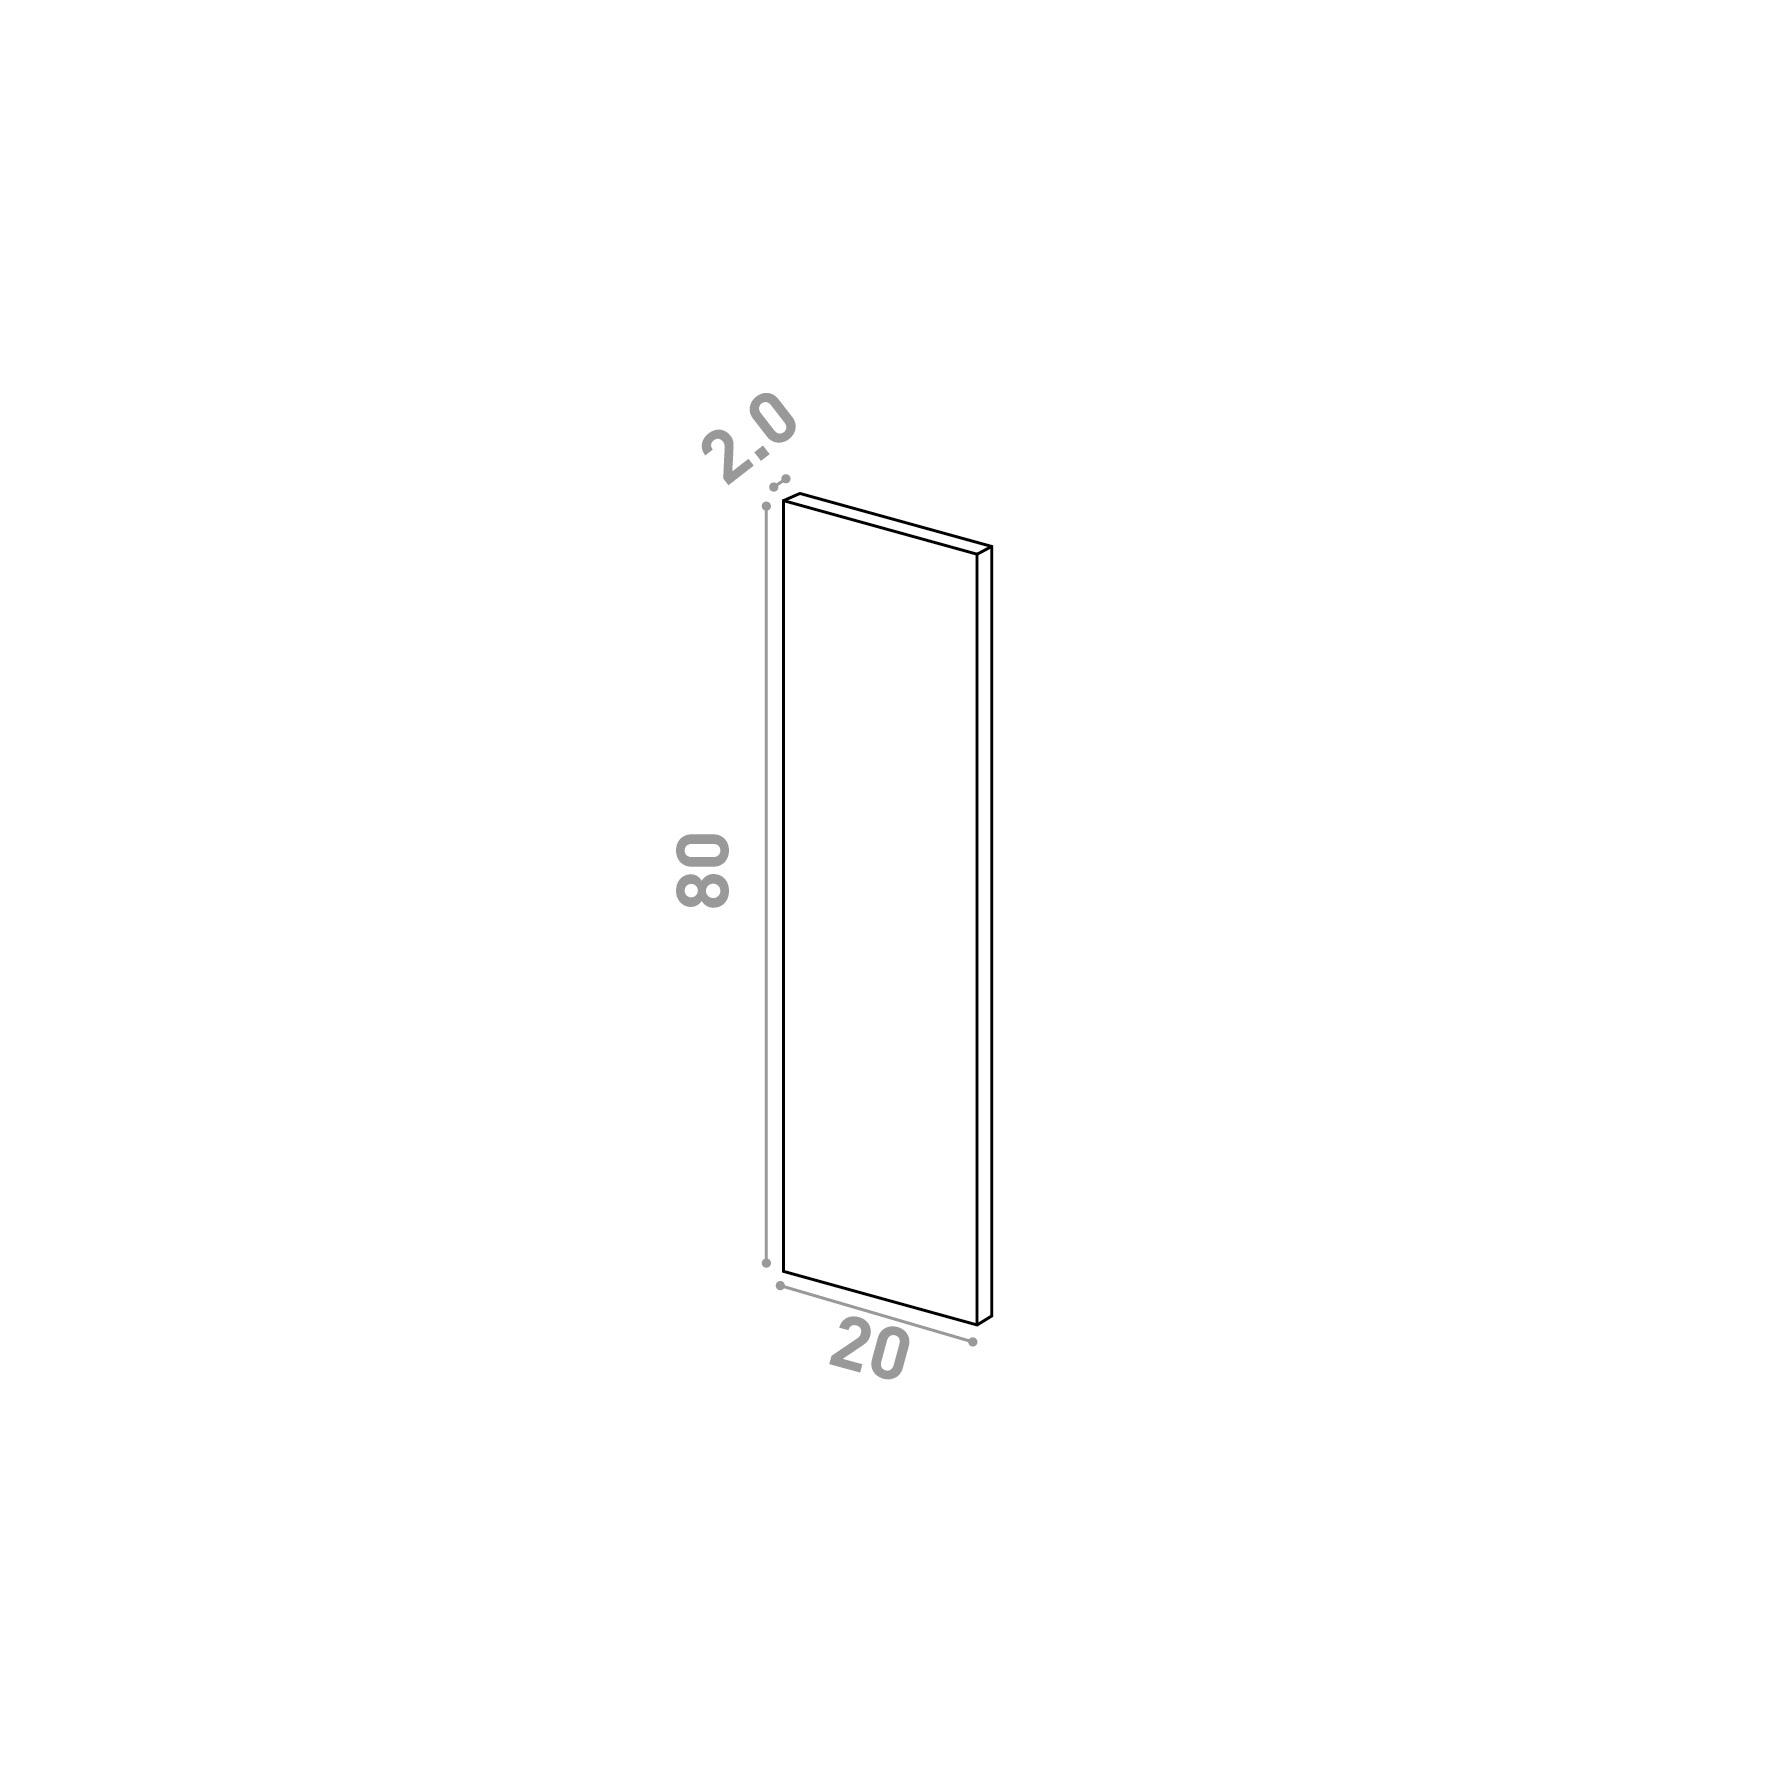 Door 20x80cm | Straight design | Matte lacquered